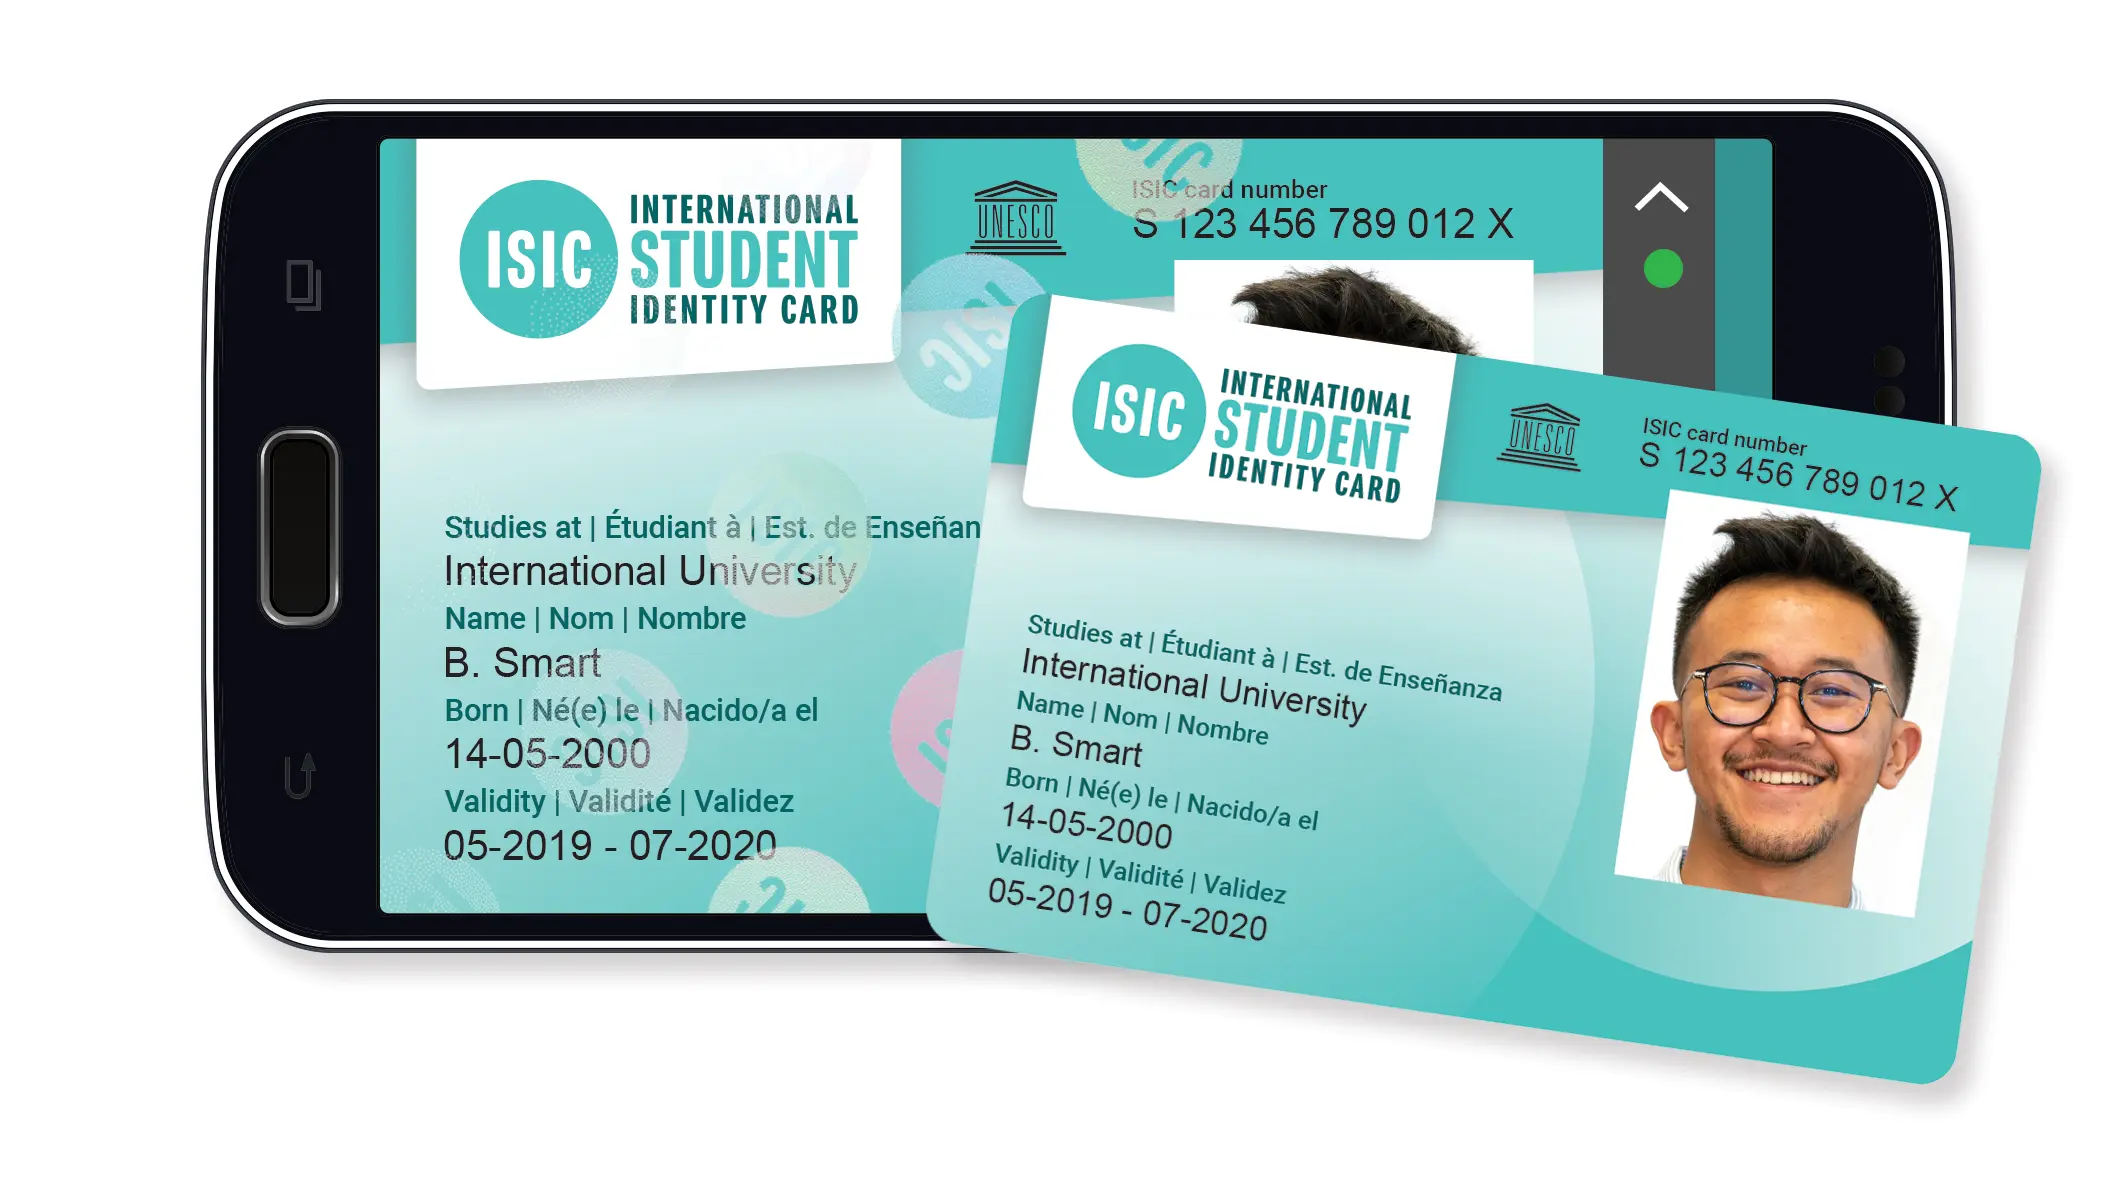 carné de estudiante isic - Qué es el carnet de estudiante ISIC